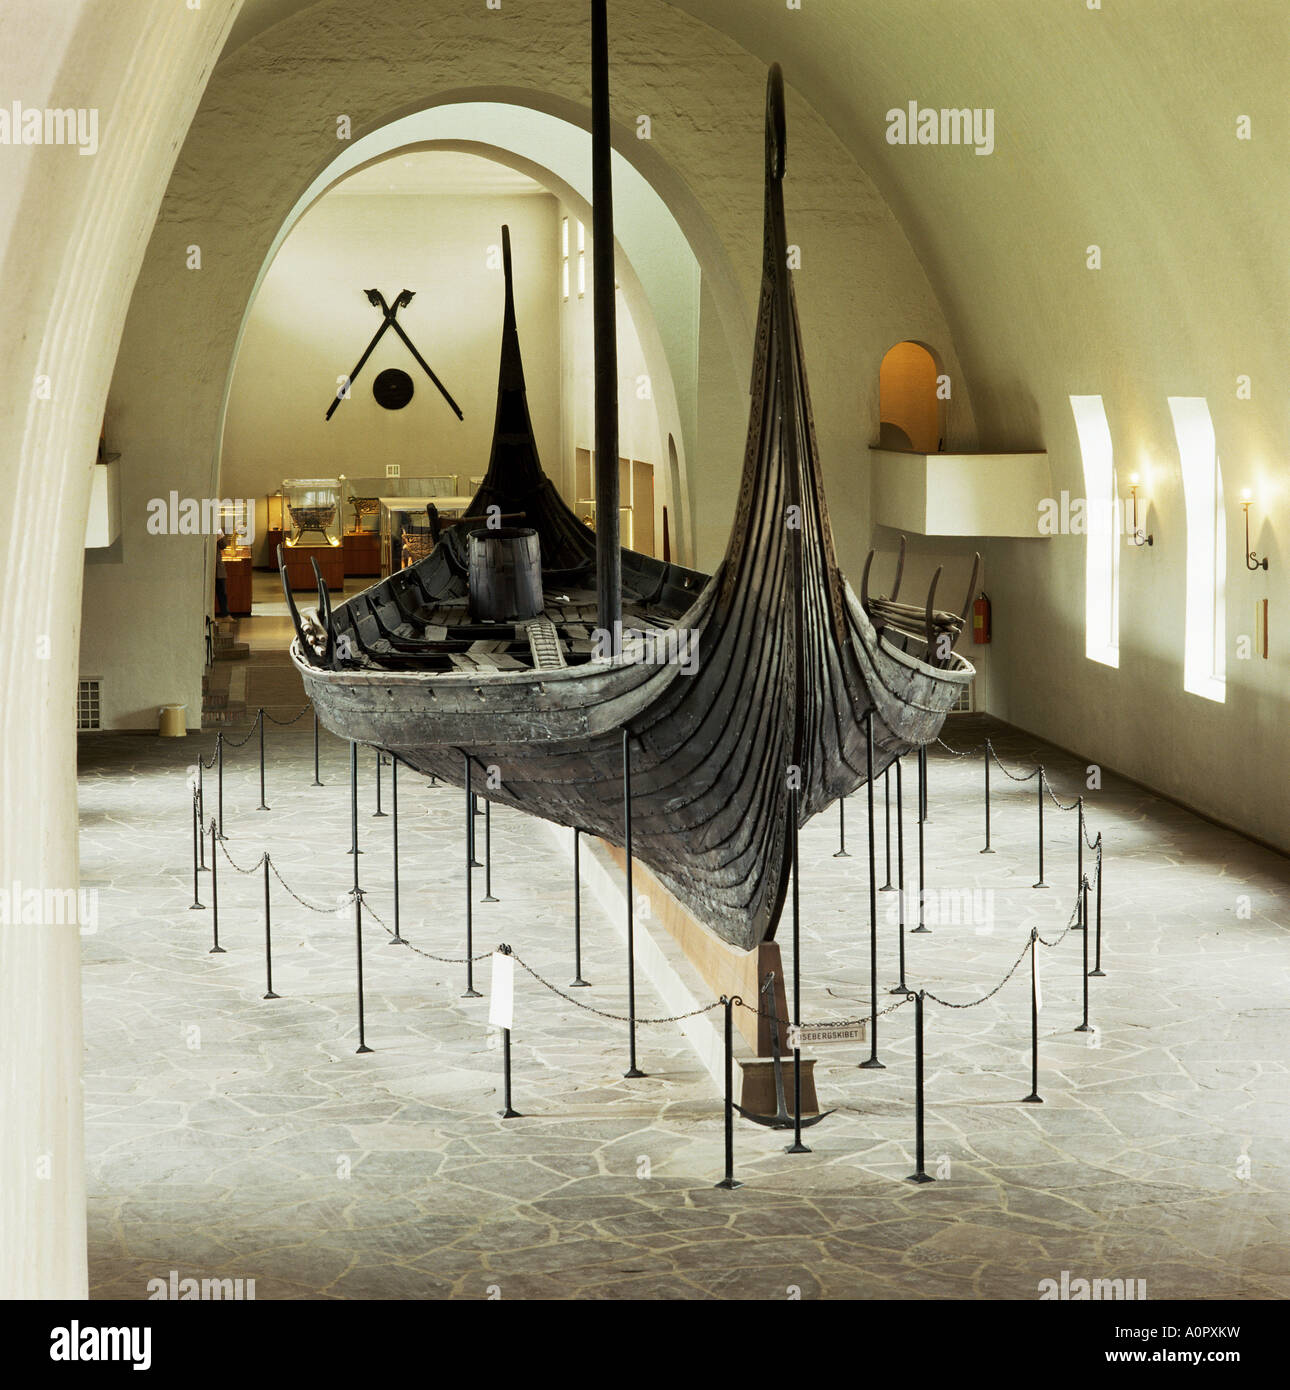 Réplique d'un bateau viking Oseberg Oslo Norvège Scandinavie Europe Banque D'Images